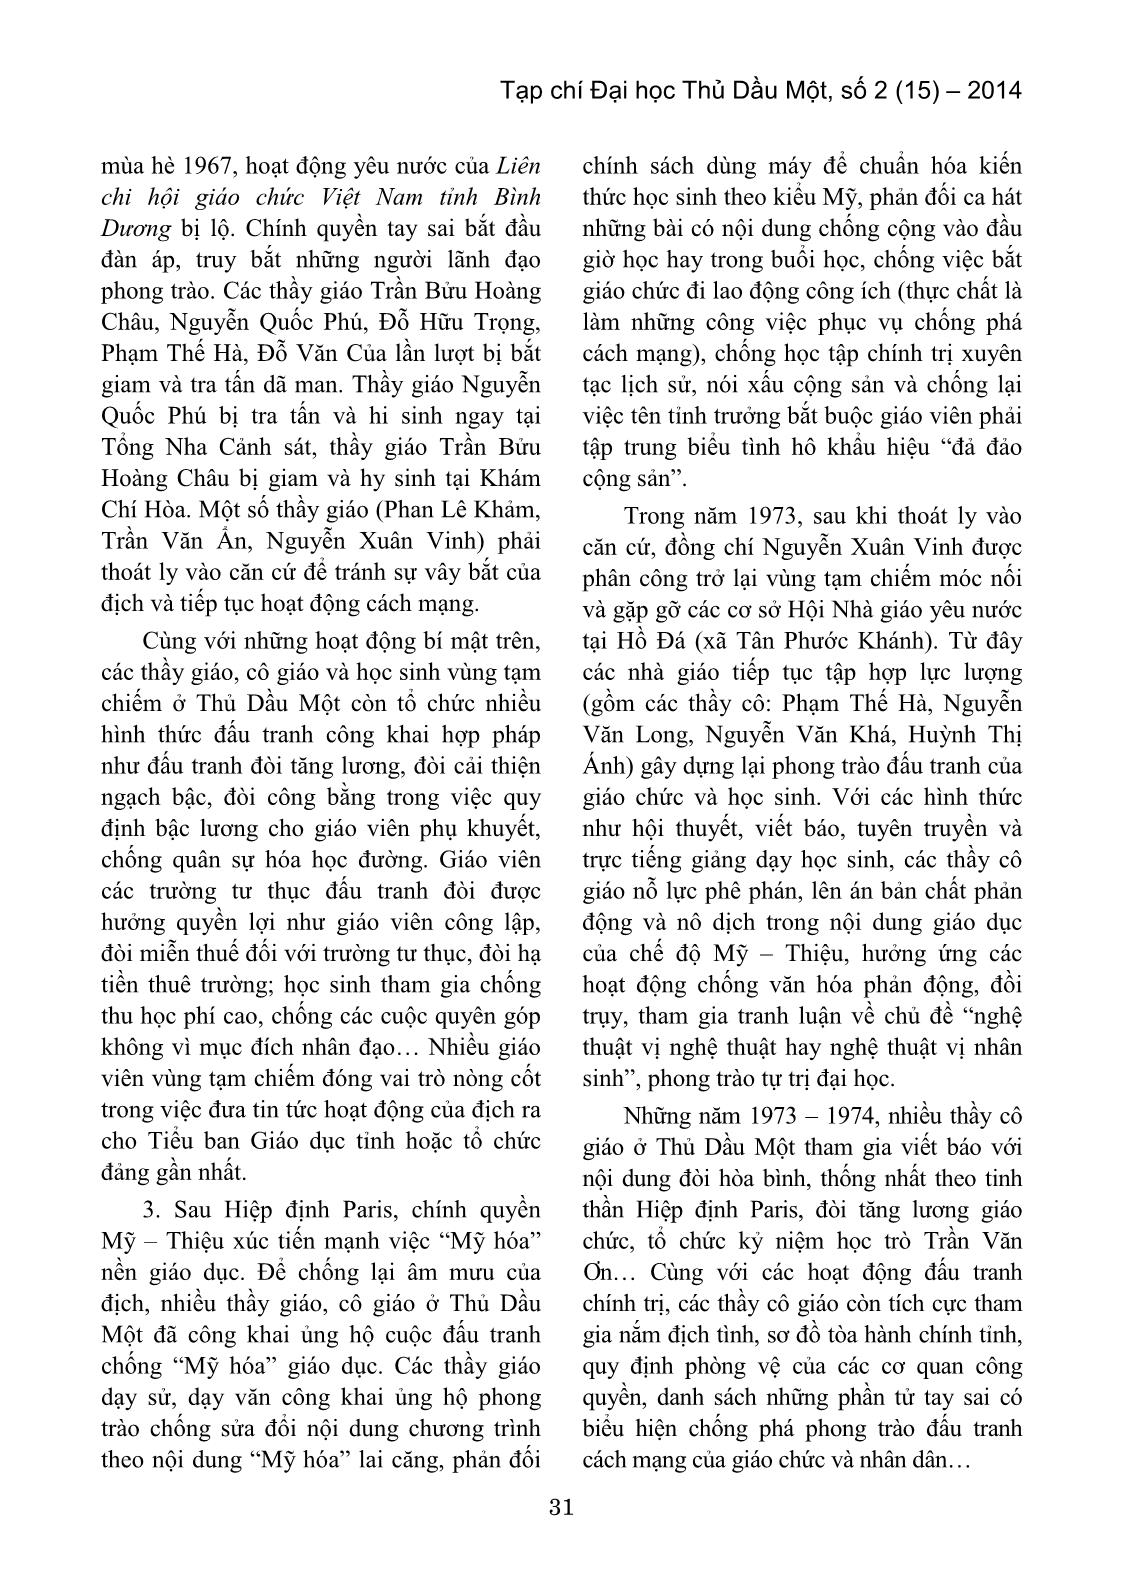 Hoạt động yêu nước của giáo viên và học sinh Thủ Dầu Một – Bình Dương trong vùng địch tạm chiếm (1954 – 1975) trang 5